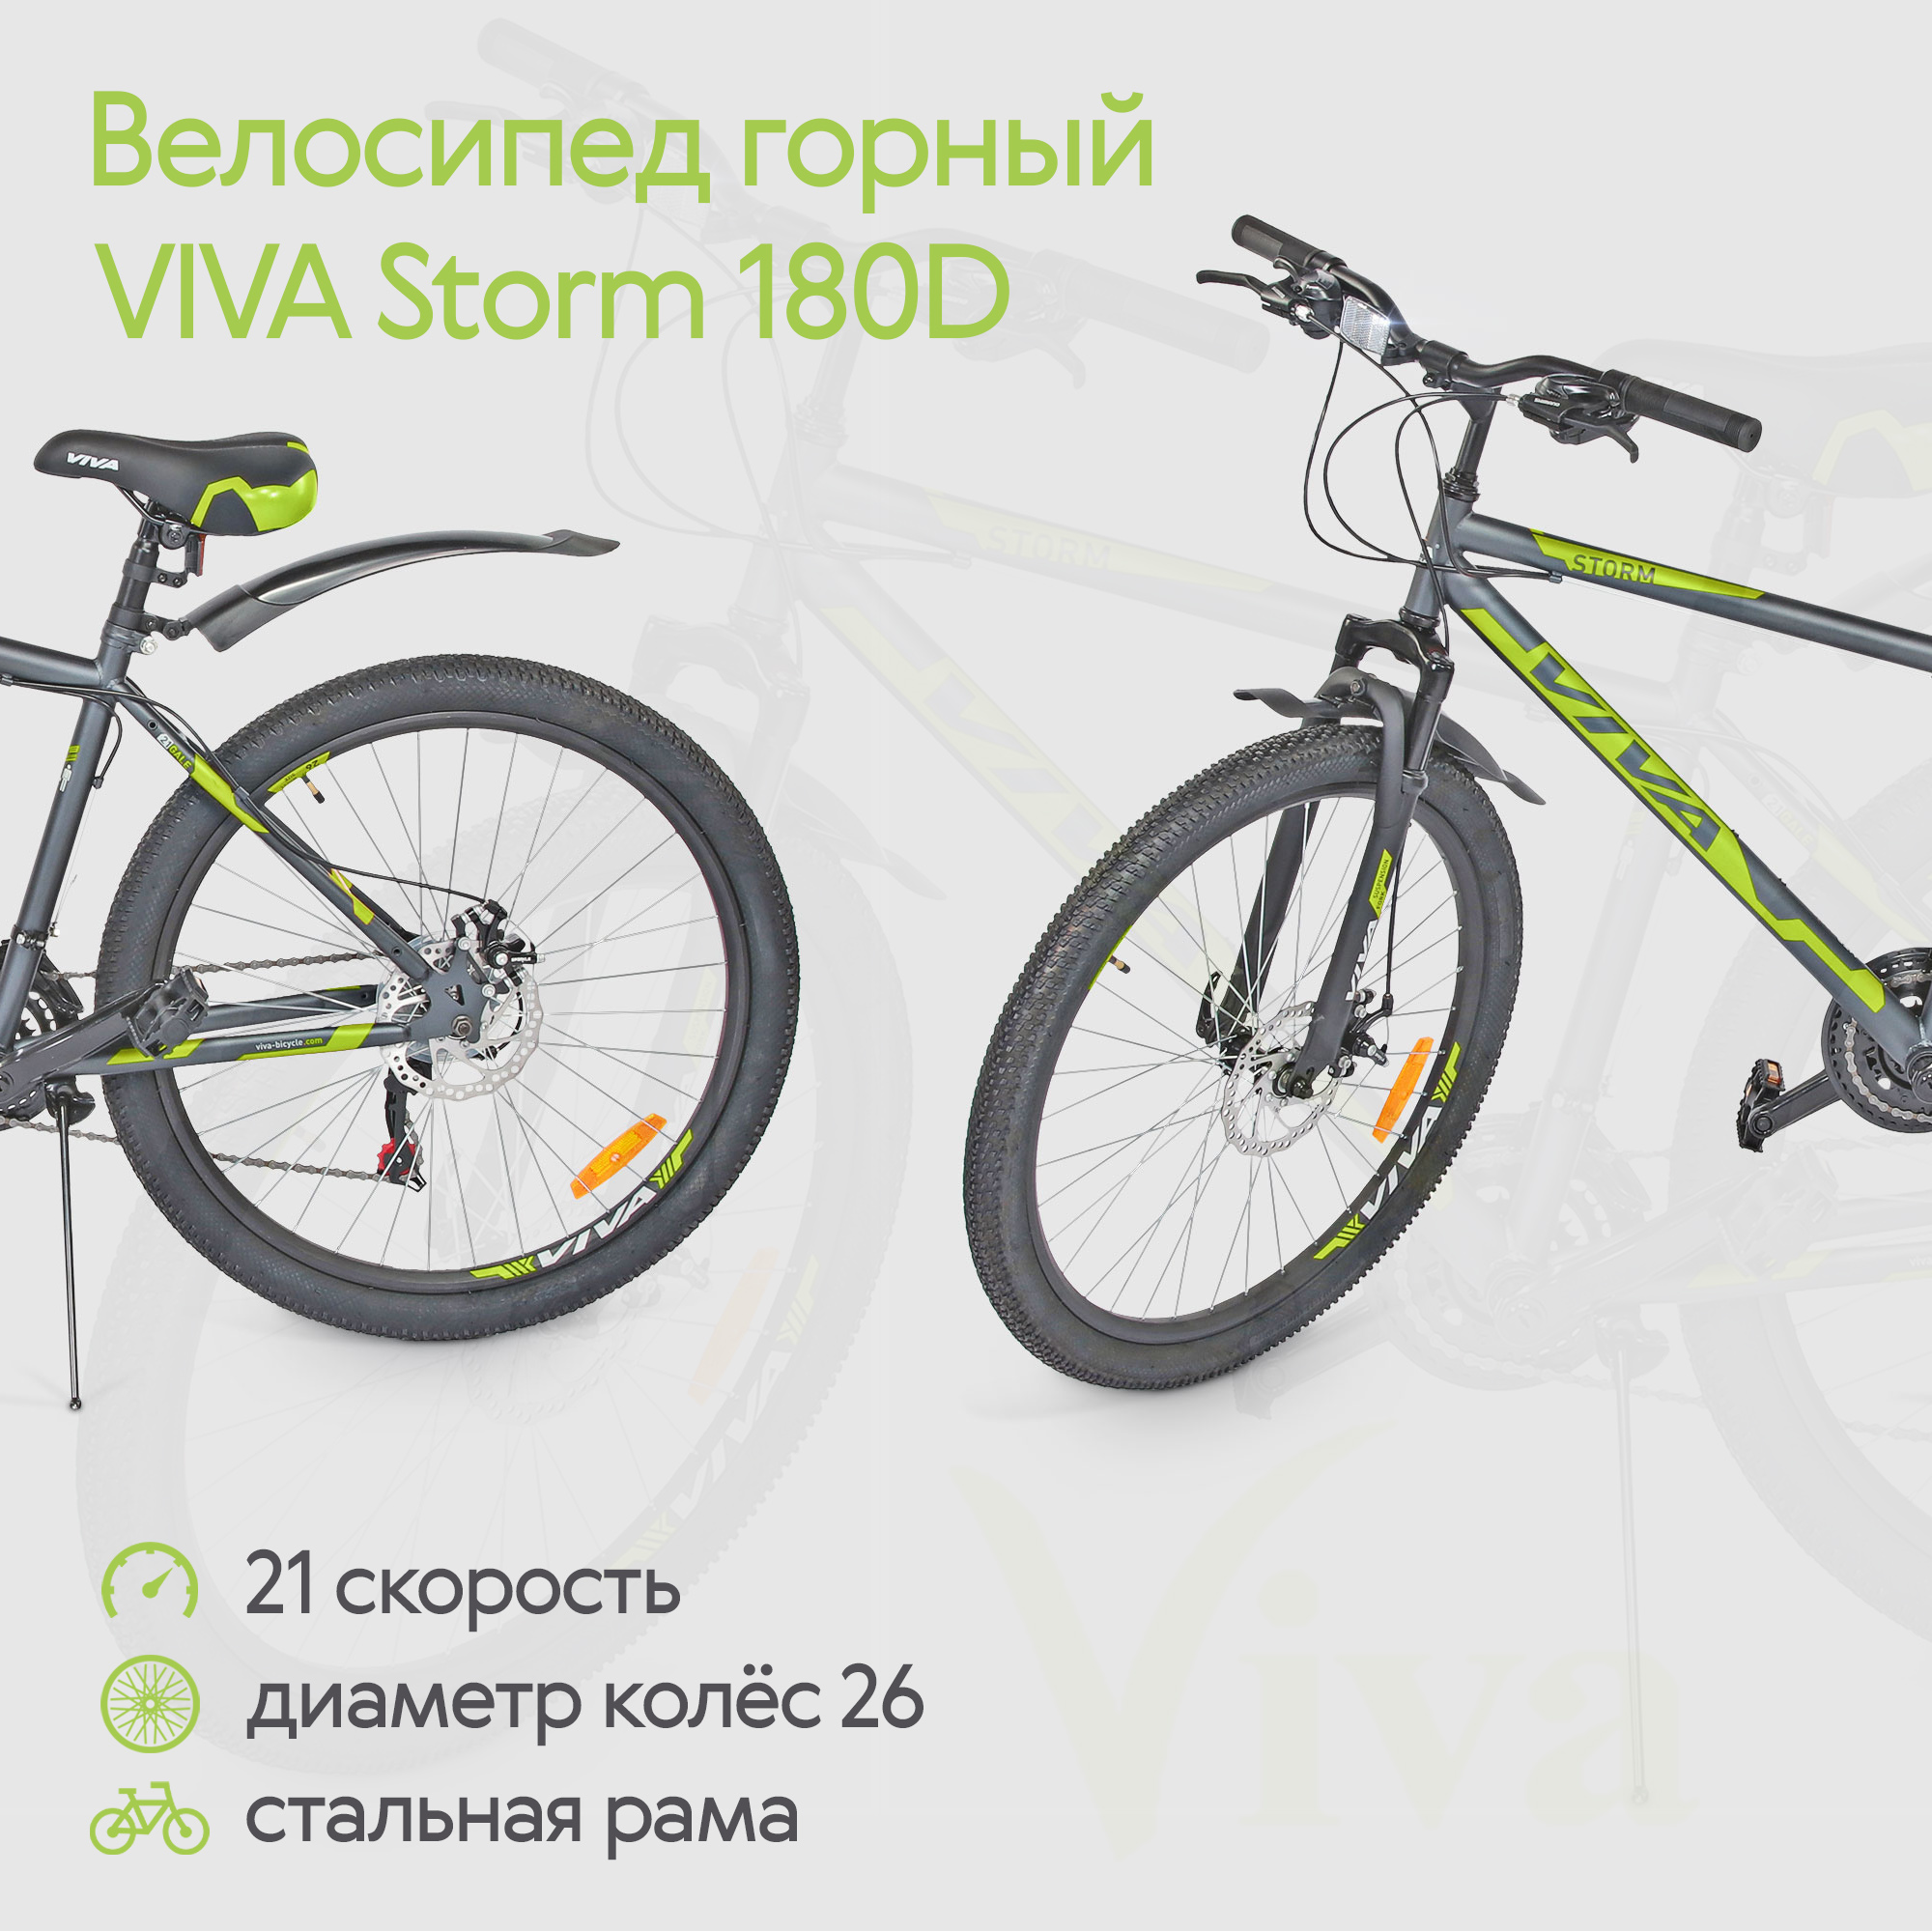 Велосипед горный VIVA Storm 180D, 21 скорость, диаметр колес 26, стальная рама, зеленый, размер 26 Shimano Tourney, правая ST-EF417R(right) и левая ST-EF41L(left), Тормозная ручка под 2 пальца с отличной эргономикой, с оптического дисплеем передач. PP MTB light Передний 3 скорости + задний Shimano Tourney - фото 2